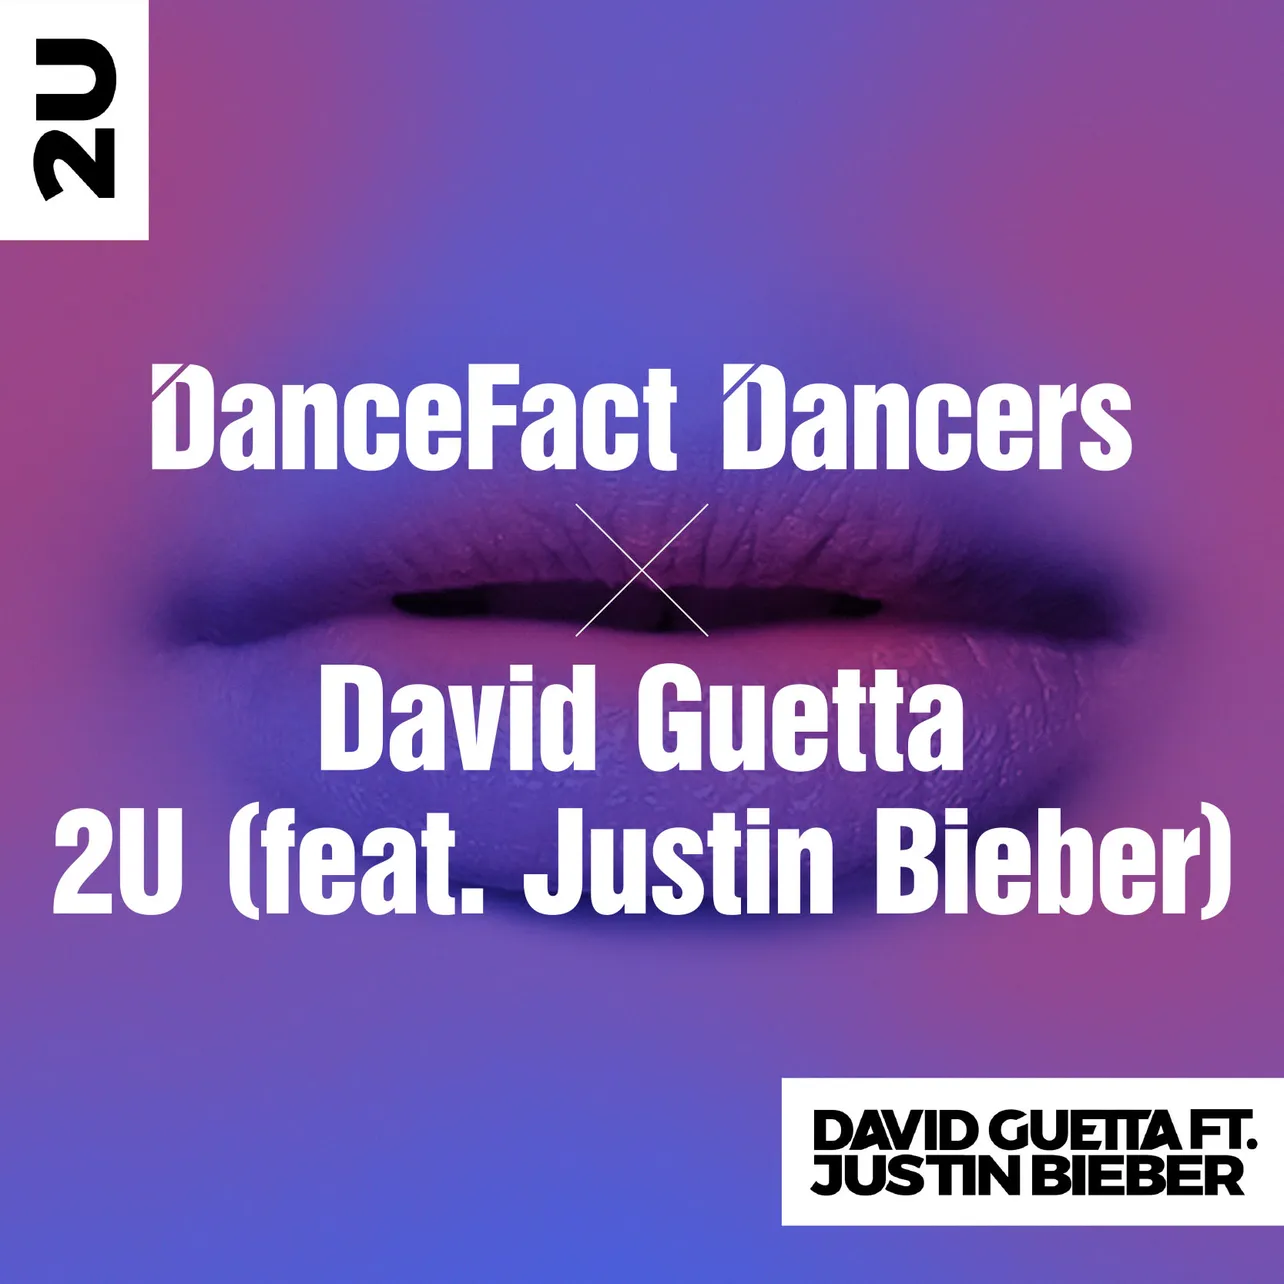 デヴィット・ゲッタの新曲「2U」と10代ダンサーのダンス動画によるコラボ企画が始動